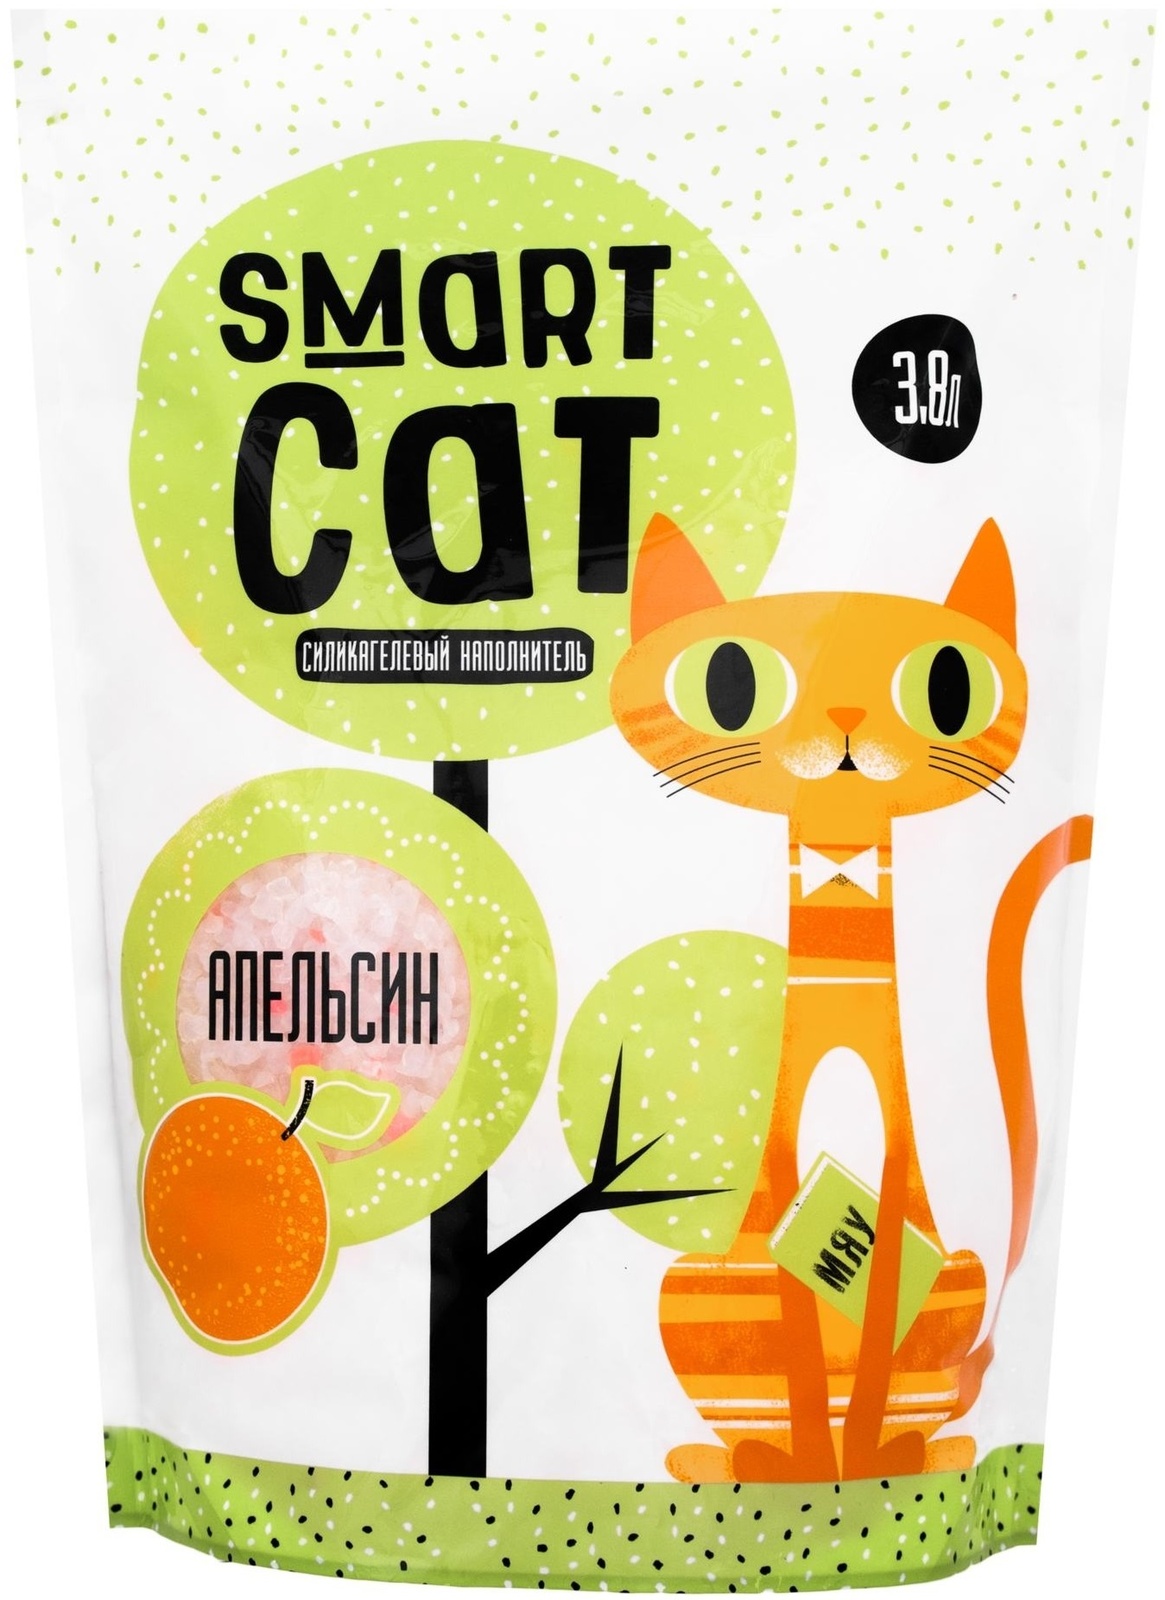 Smart Cat наполнитель силикагелевый наполнитель с ароматом апельсина (1,66 кг) Smart Cat наполнитель силикагелевый наполнитель с ароматом апельсина (1,66 кг) - фото 1